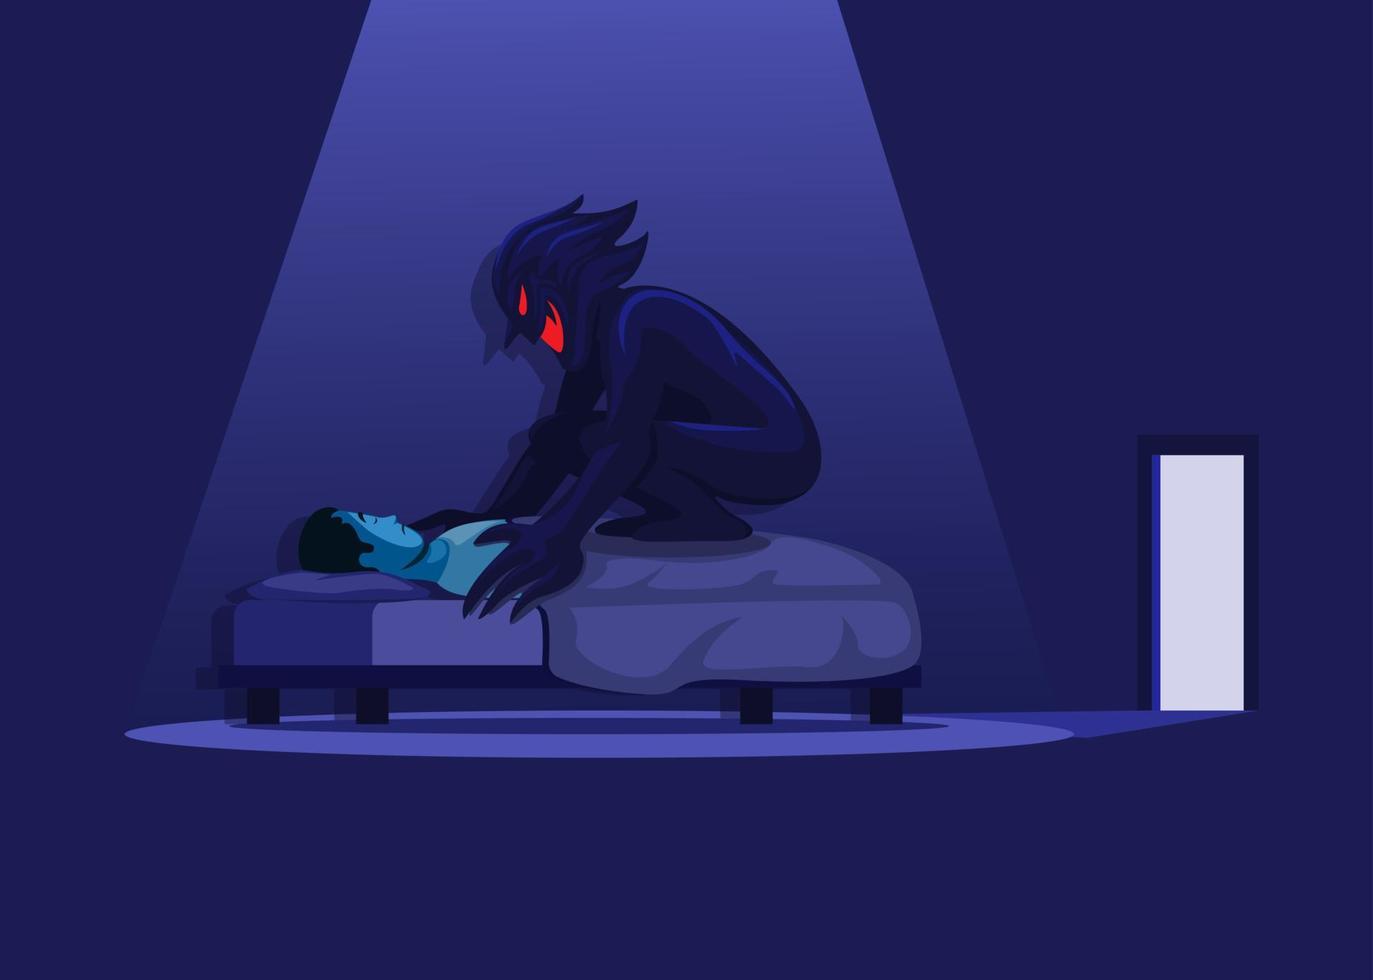 parálisis del sueño con demonio en la cama. vector de ilustración de escena de terror de pesadilla